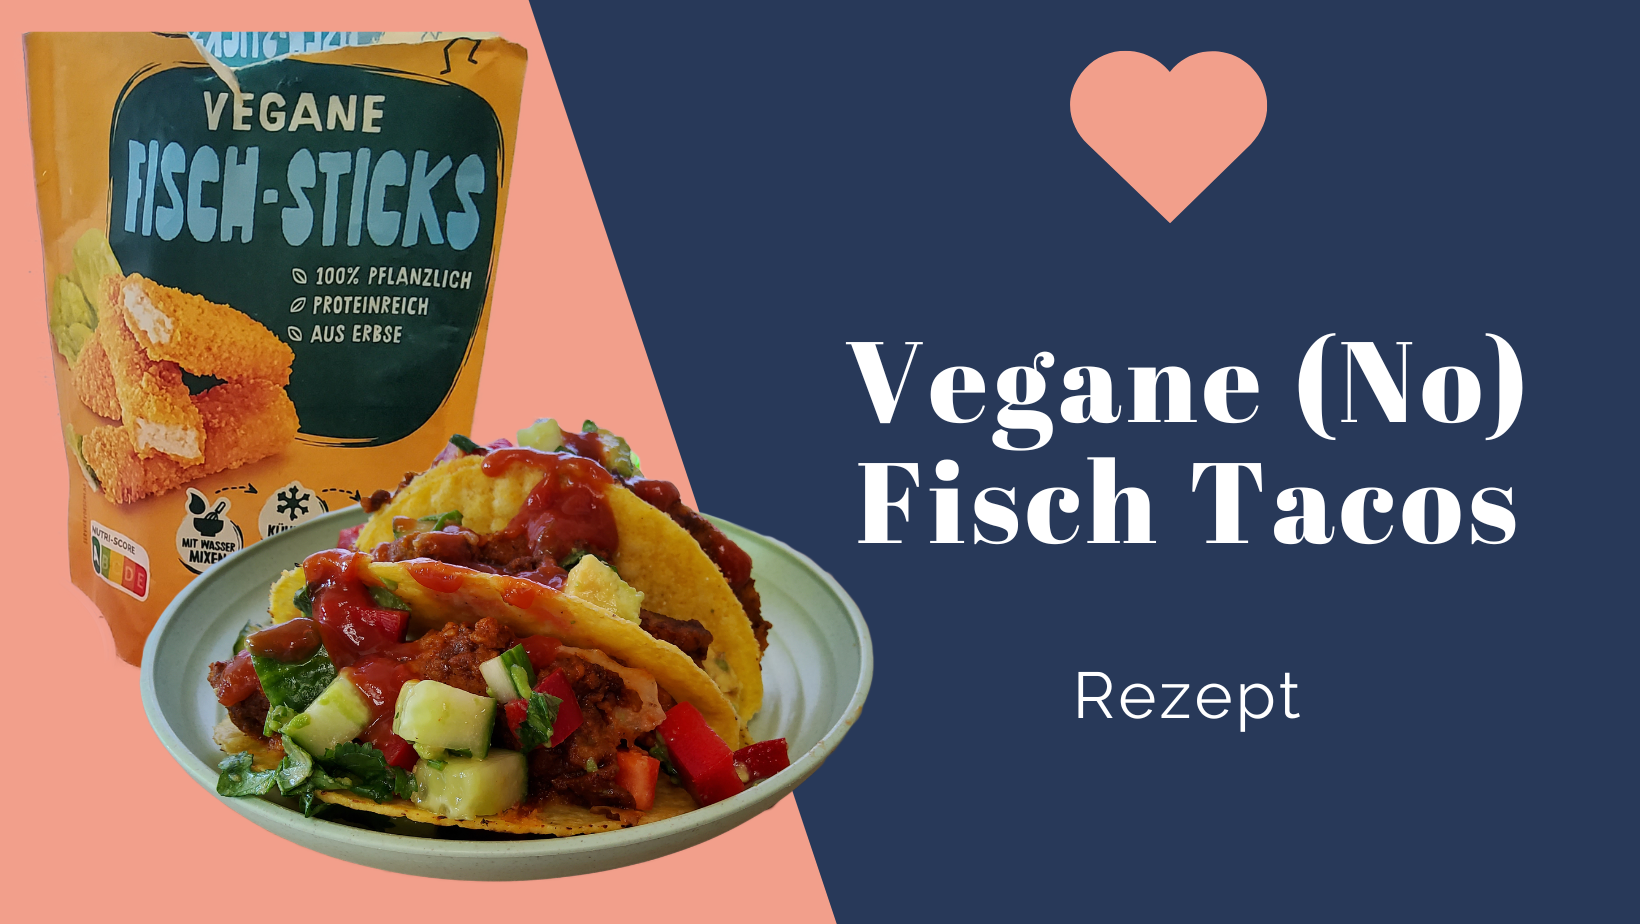 Vegane No Fisch Tacos mit Greenforce Vegane Fisch-Sticks